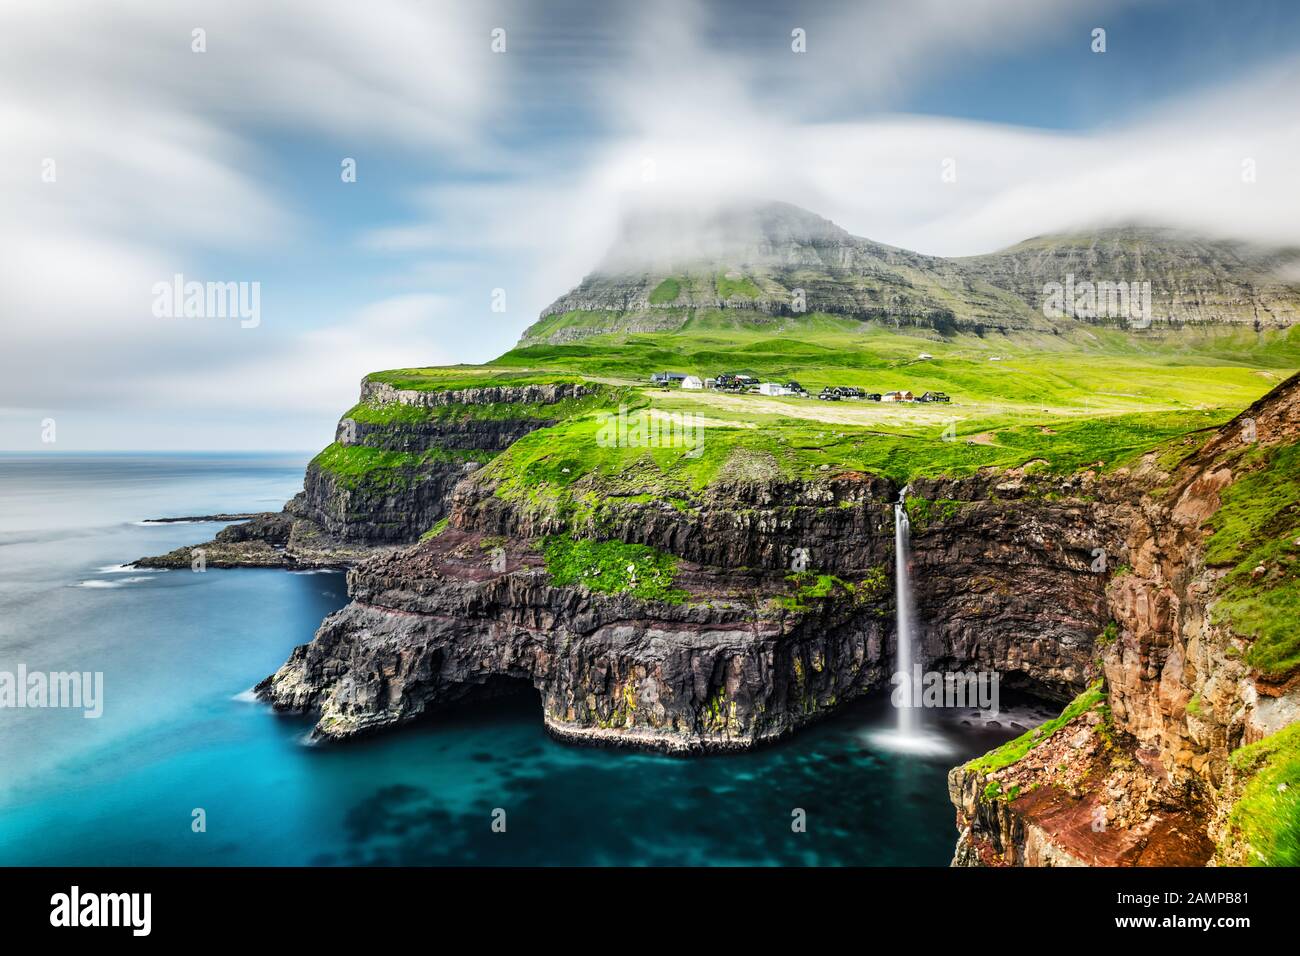 Incredibile vista giorno della cascata Mulafossur nel villaggio di Gasadalur, Vagar Island delle Isole Faroe, Danimarca. Fotografia di paesaggio Foto Stock